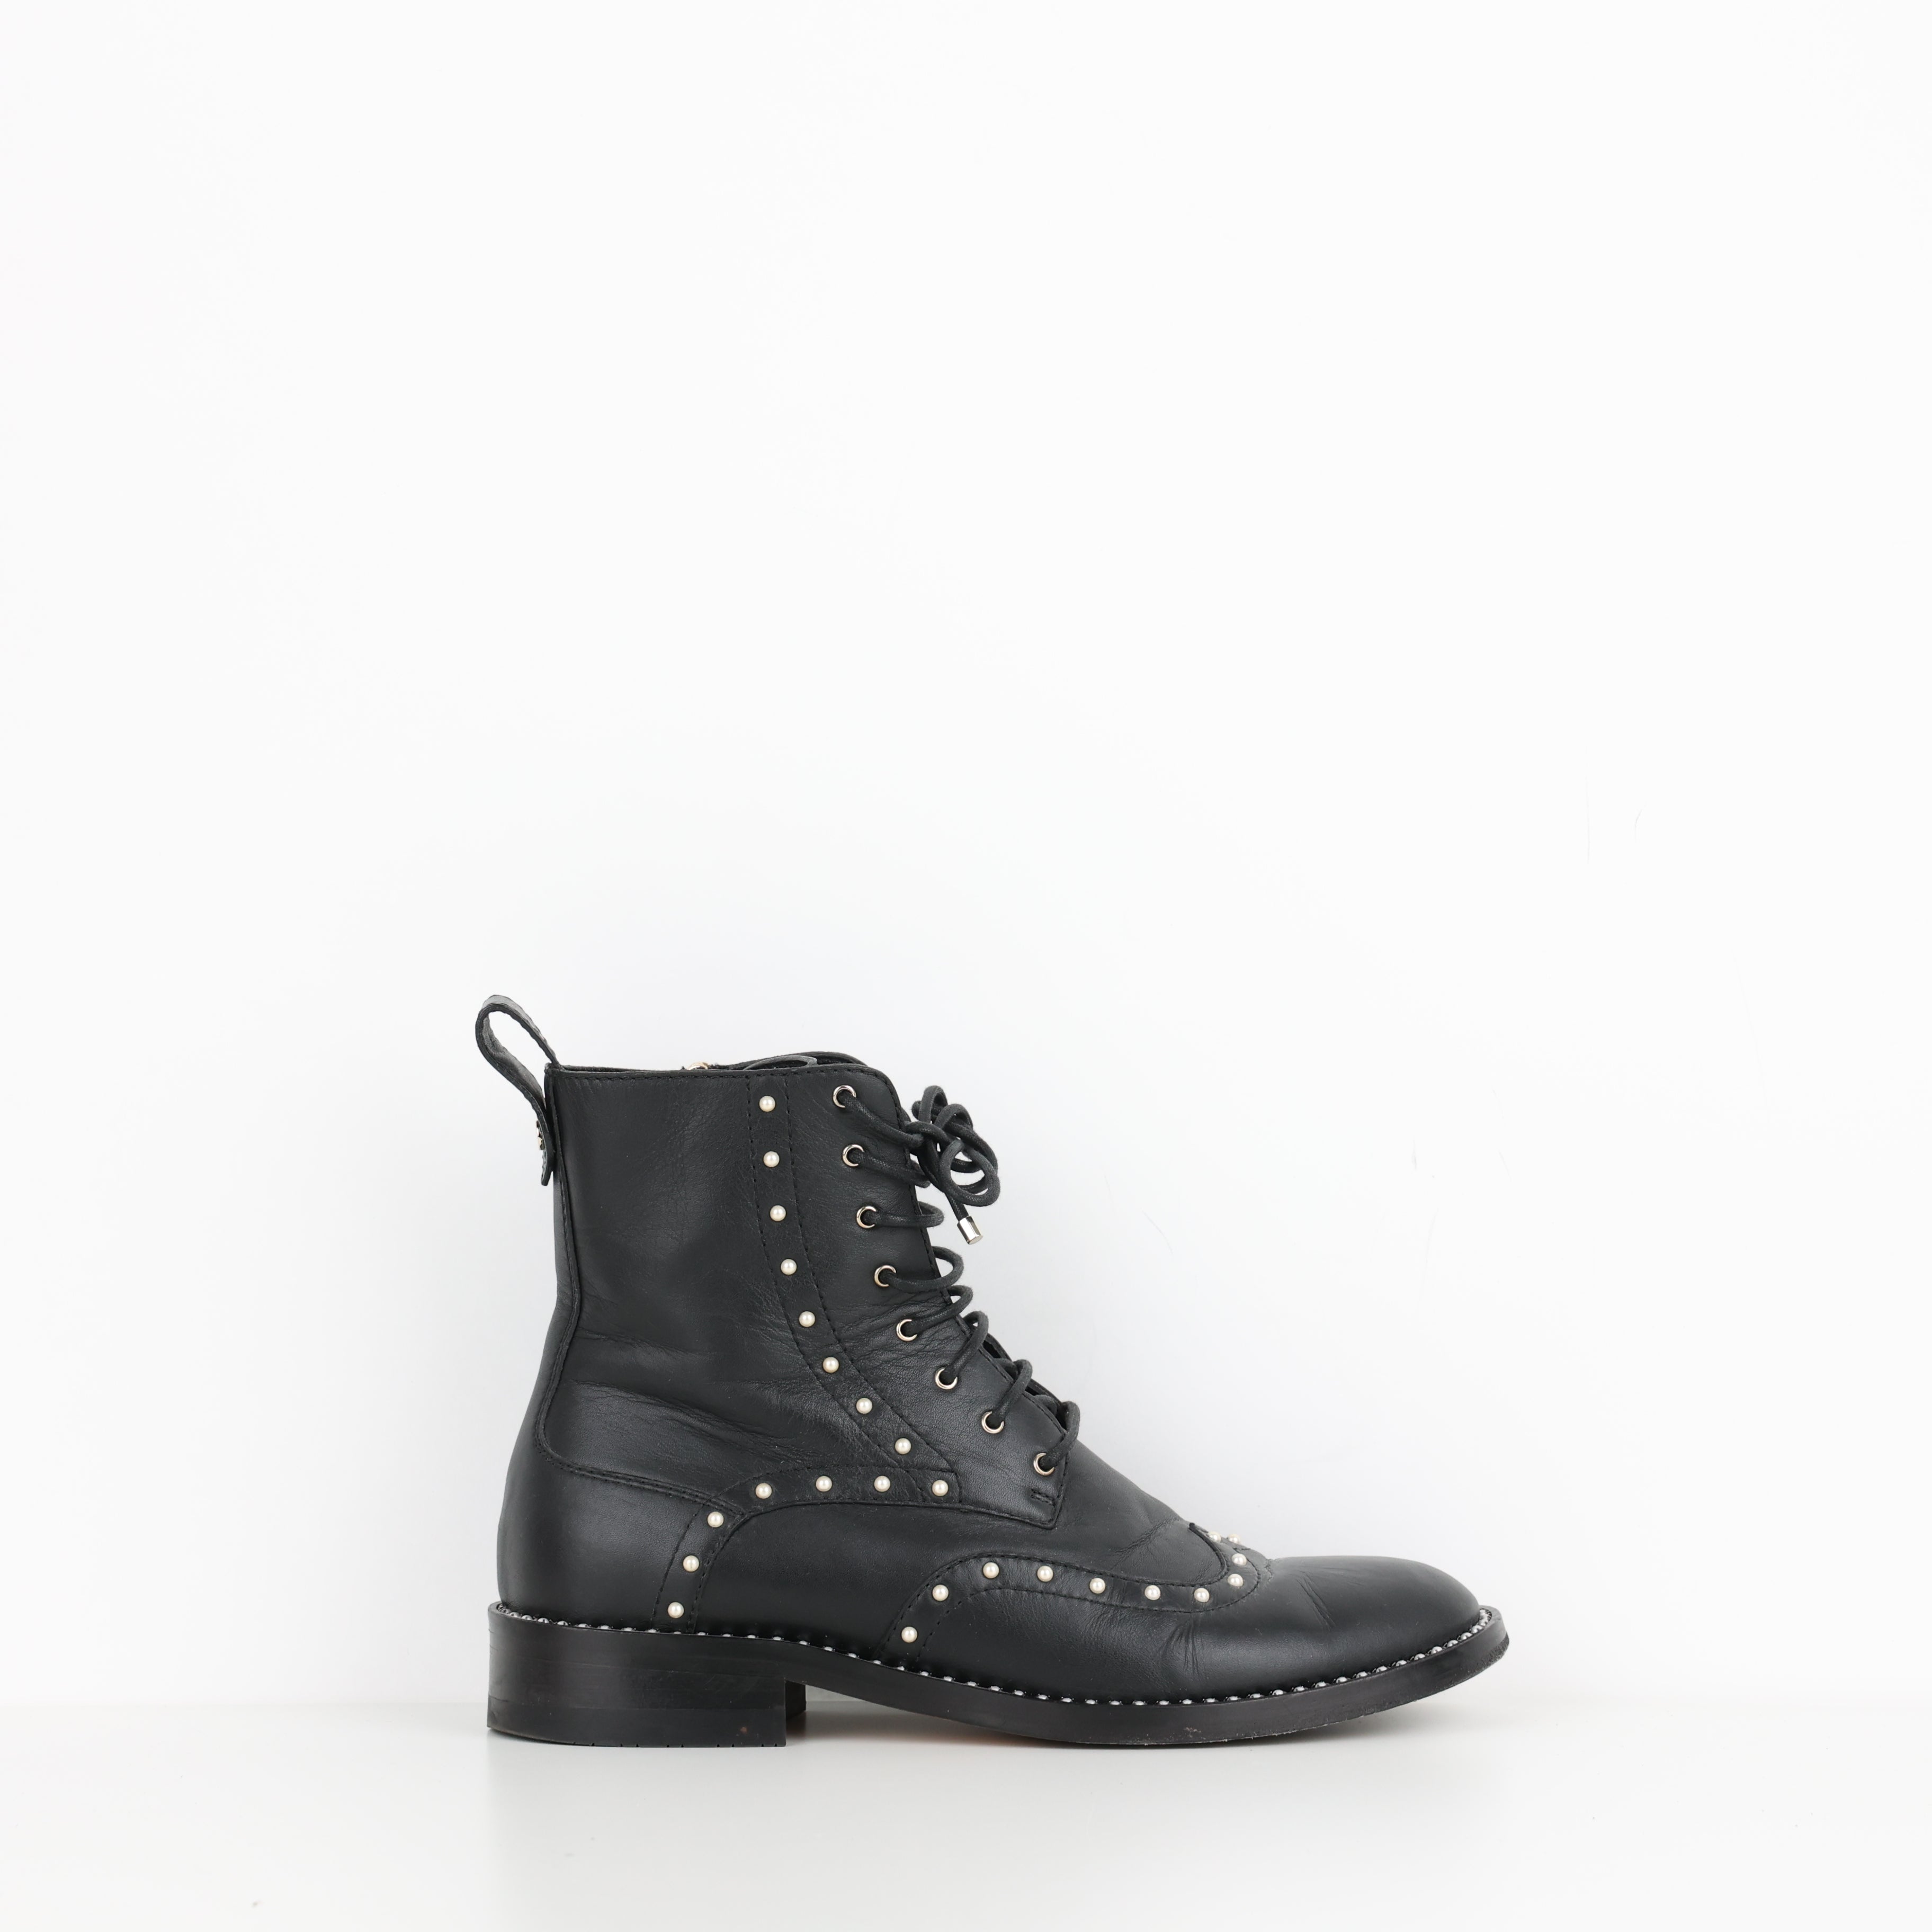 Boots , Shoe Size 38